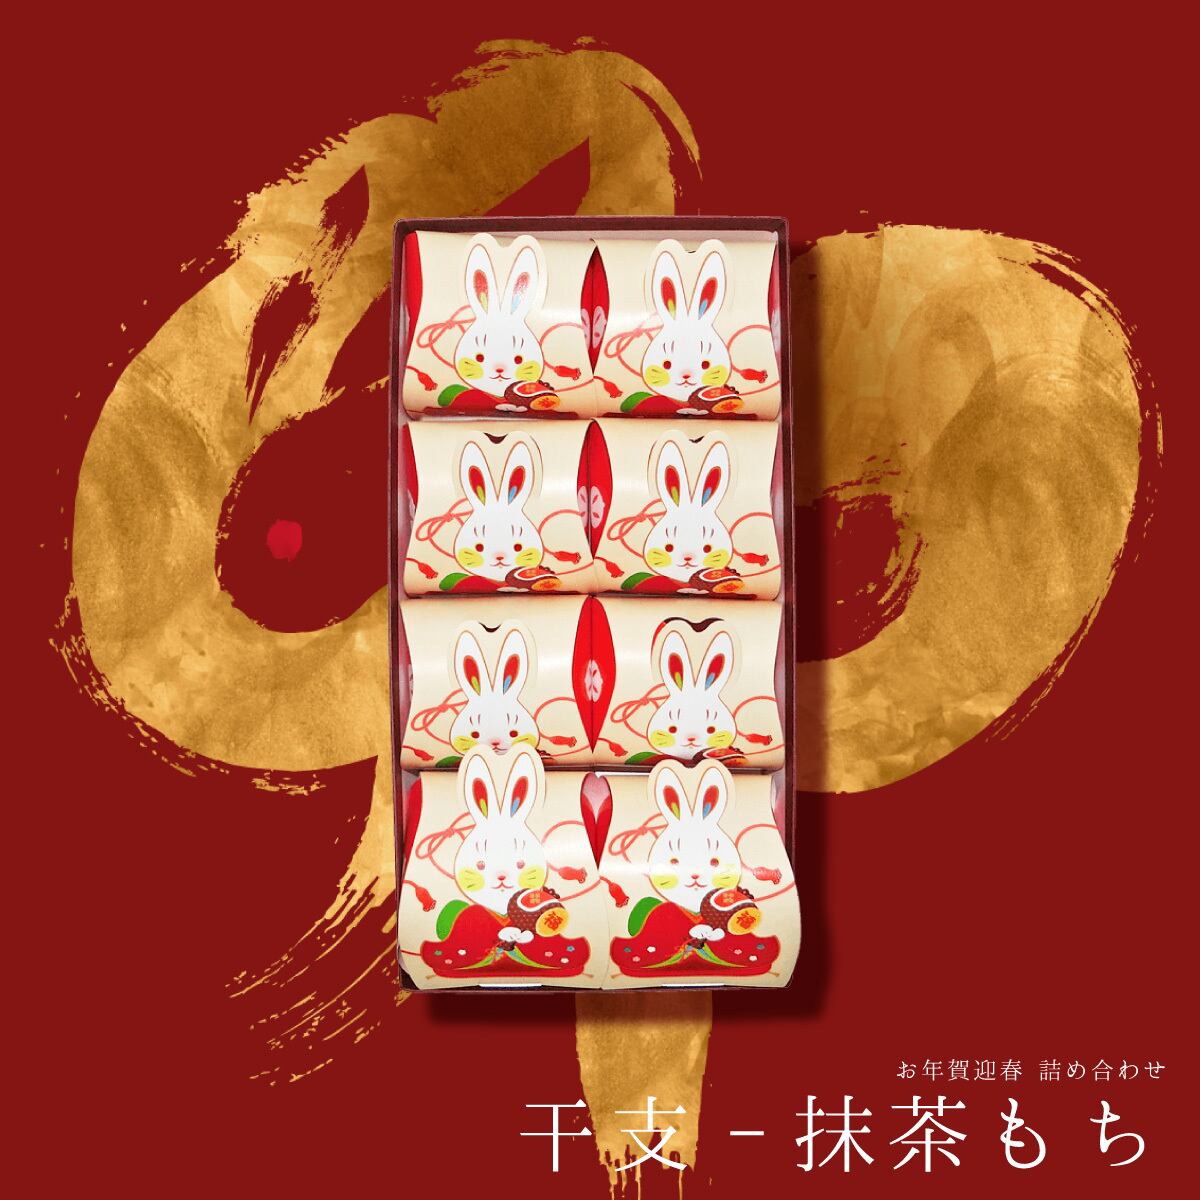 お年賀迎春「干支 抹茶もち」 8個入り #お正月#和菓子#卯年#お祝い